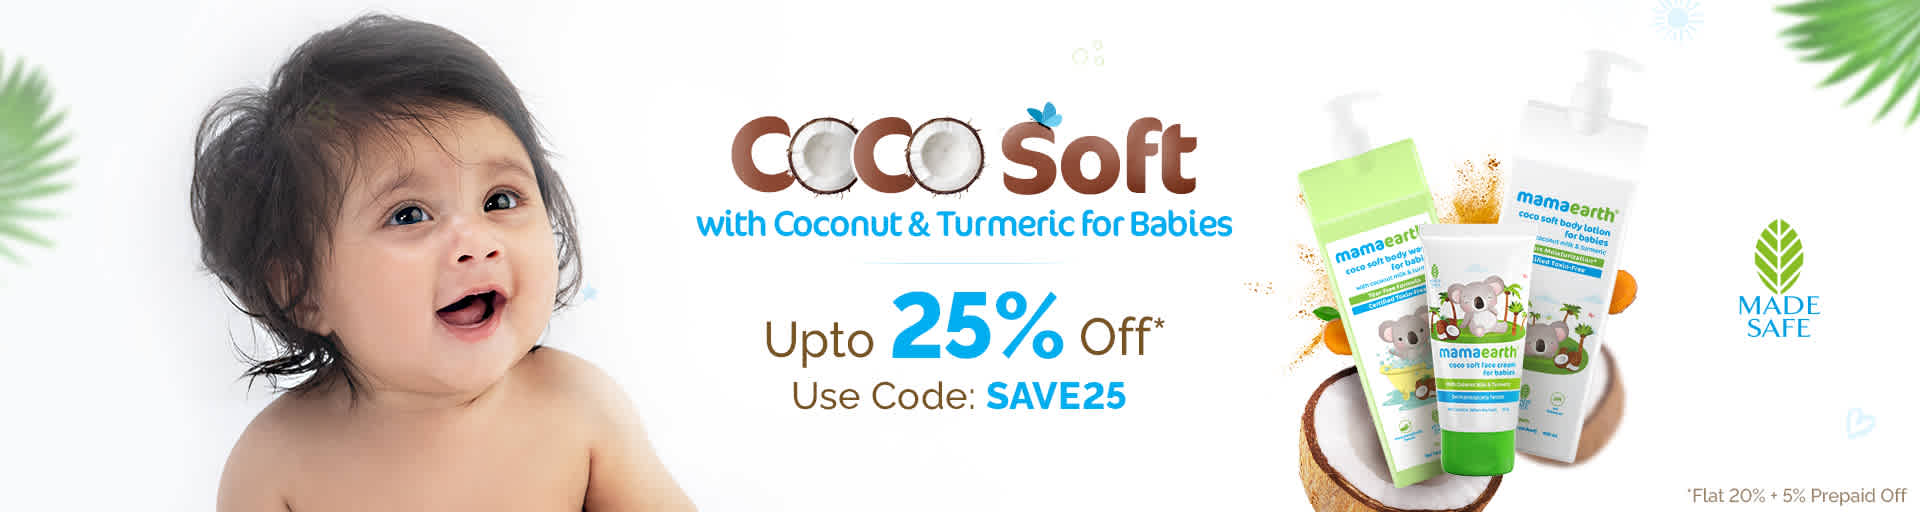 Coco Soft